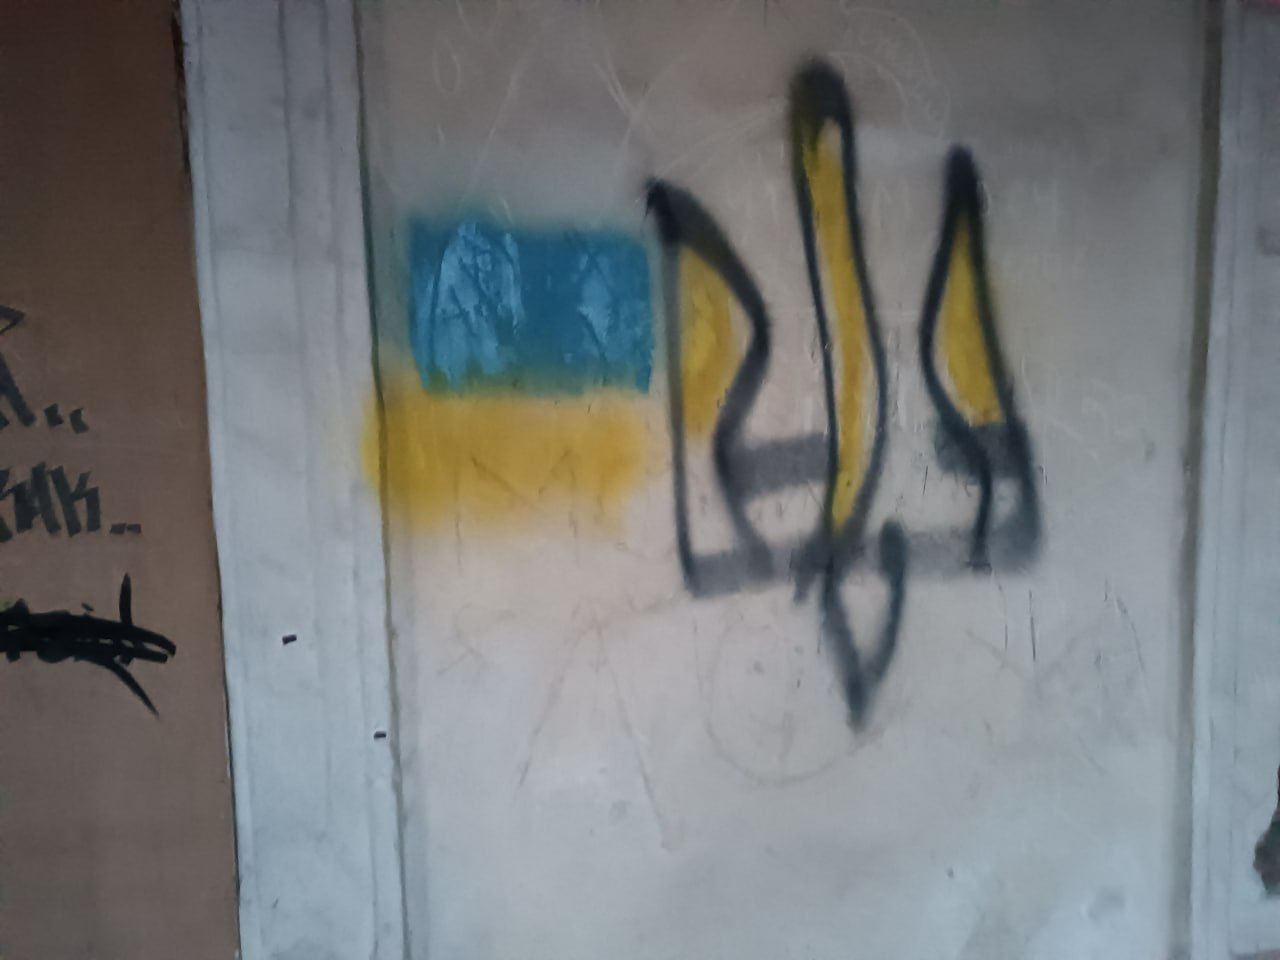 Луганск и Донецк не сломались! Патриоты напомнили оккупантам, что им пора "на выход". Фото